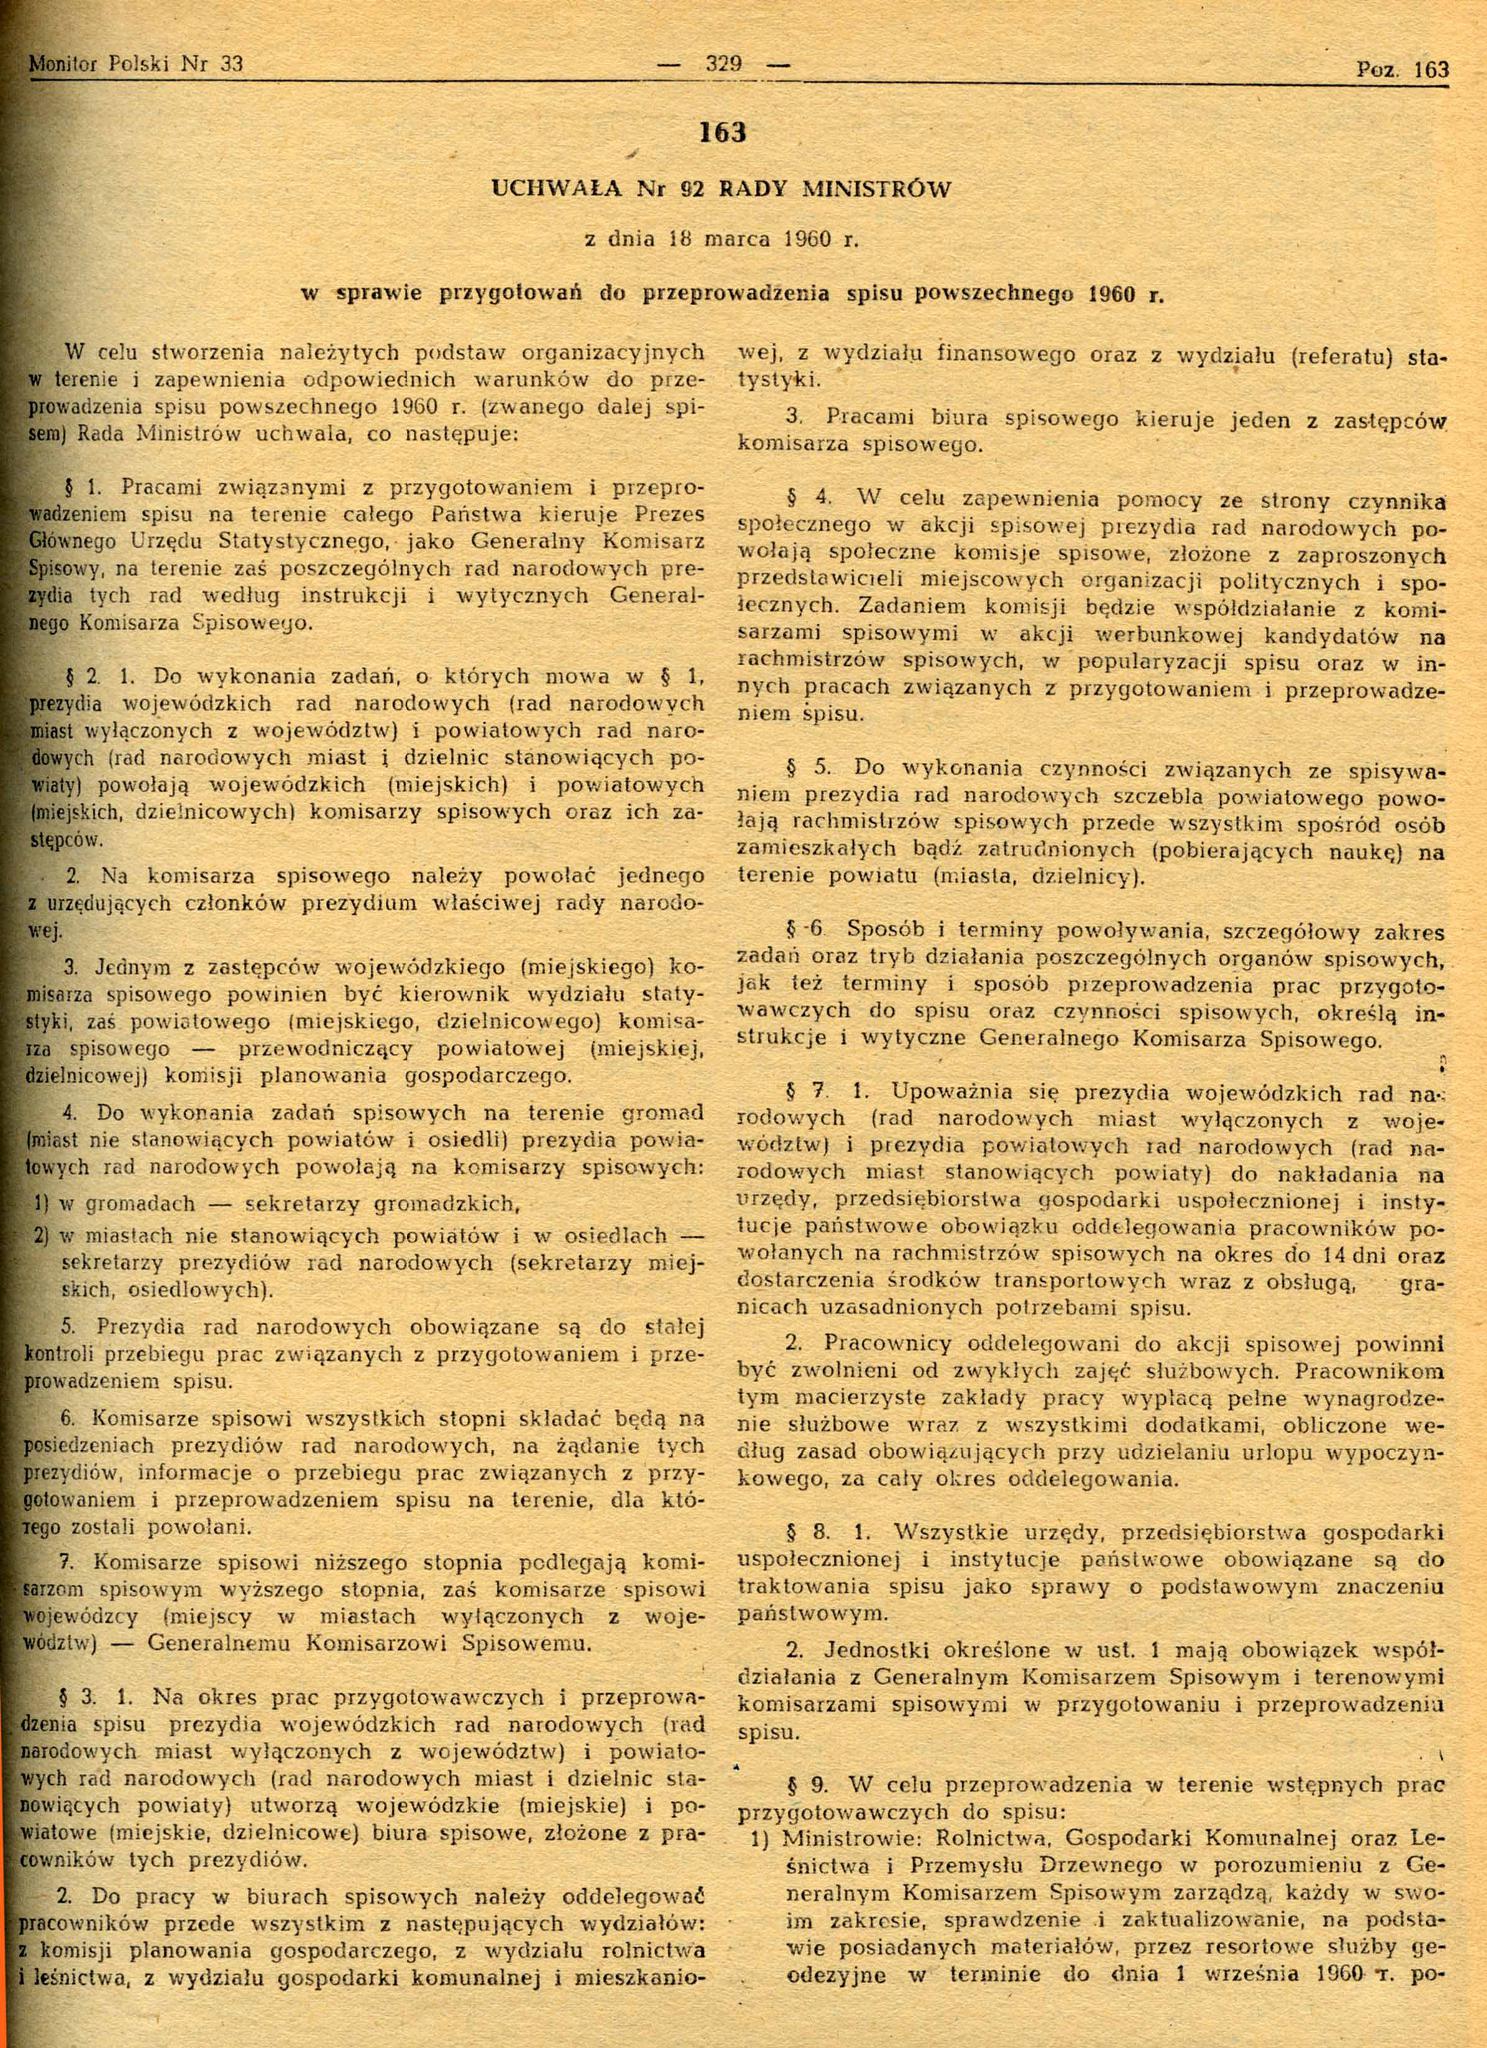 Uchwała Nr 92 Rady Ministrów z dnia 18 marca 1960 r. w sprawie przygotowań do przeprowadzenia spisu powszechnego 1960 r.